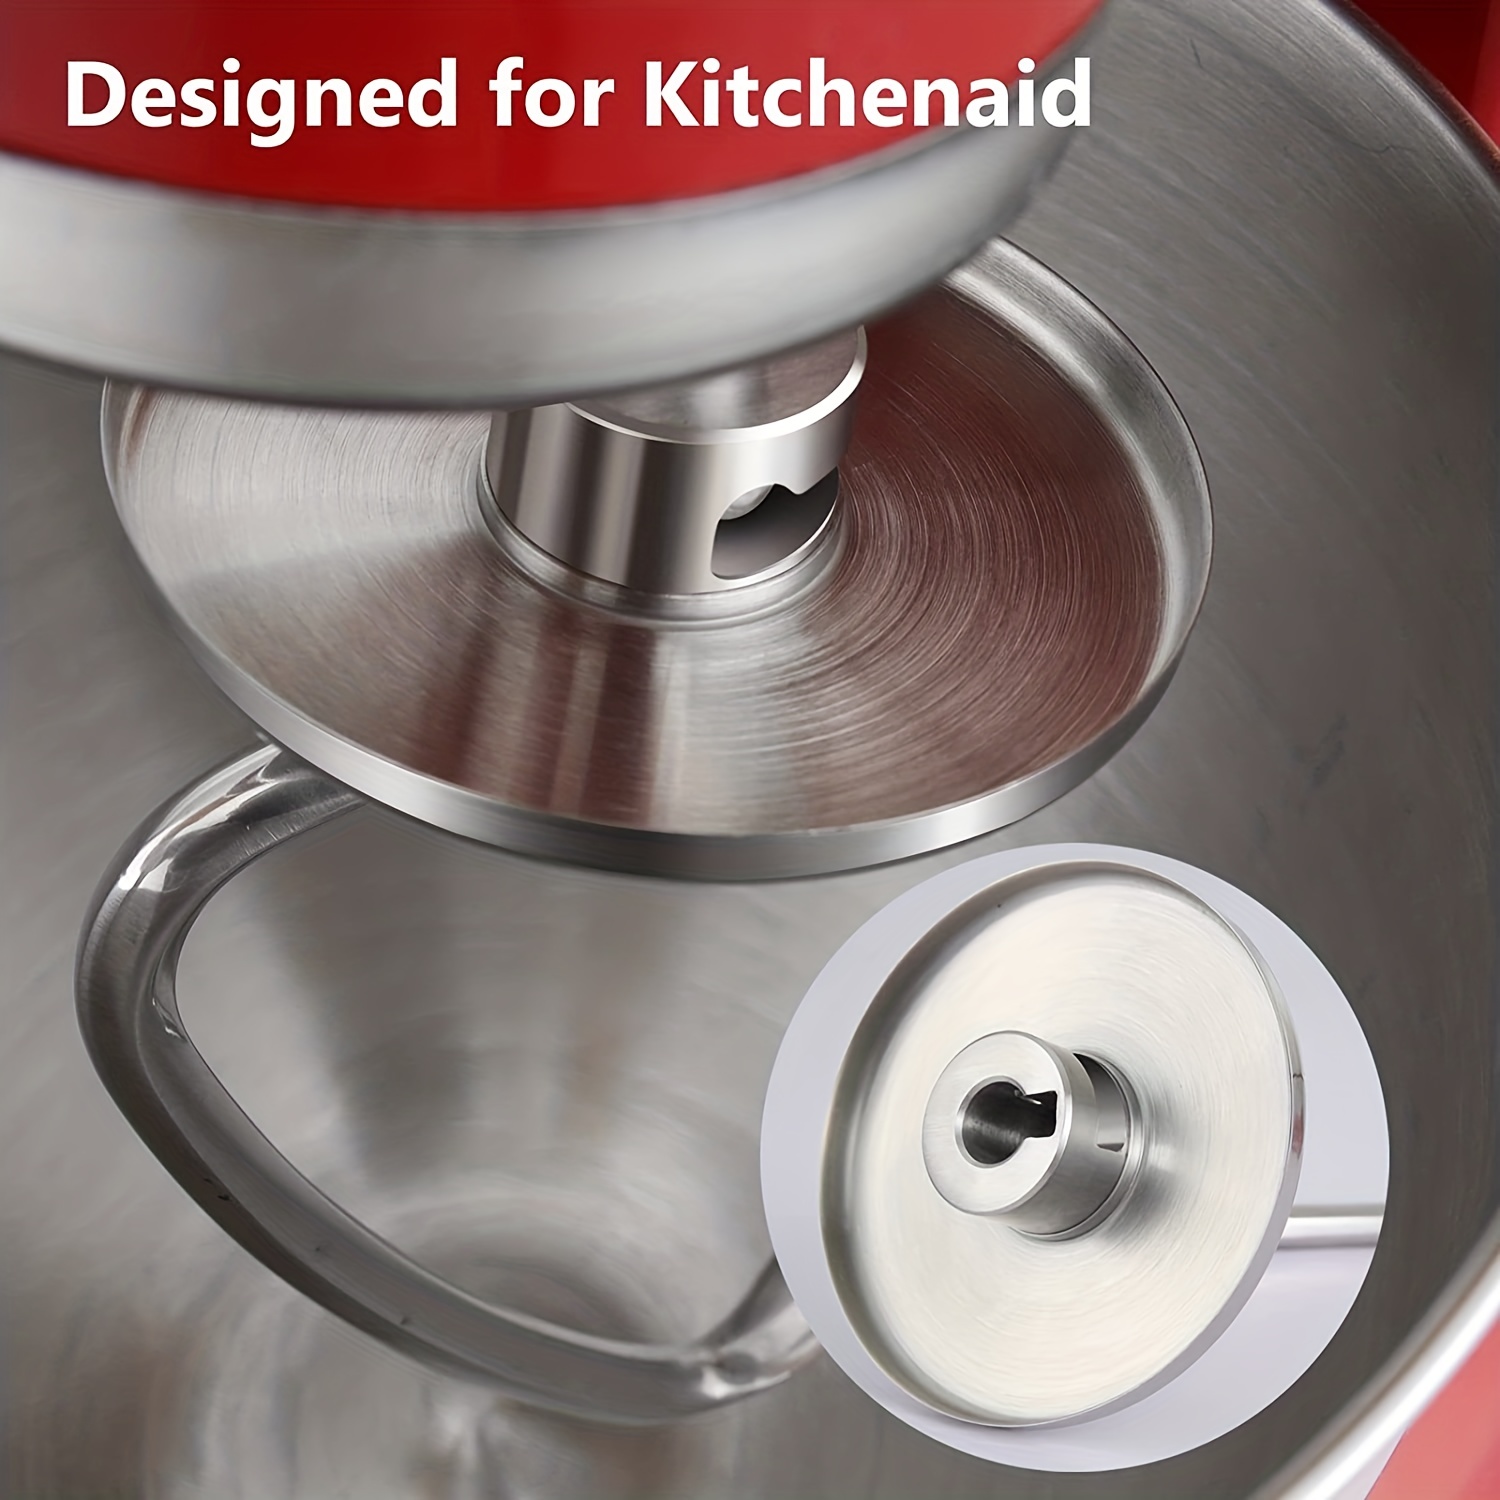 KitchenAid Lift Stand Mixer 5 Quart Bowl Stainless Steel Mixing Bowl -  Korea